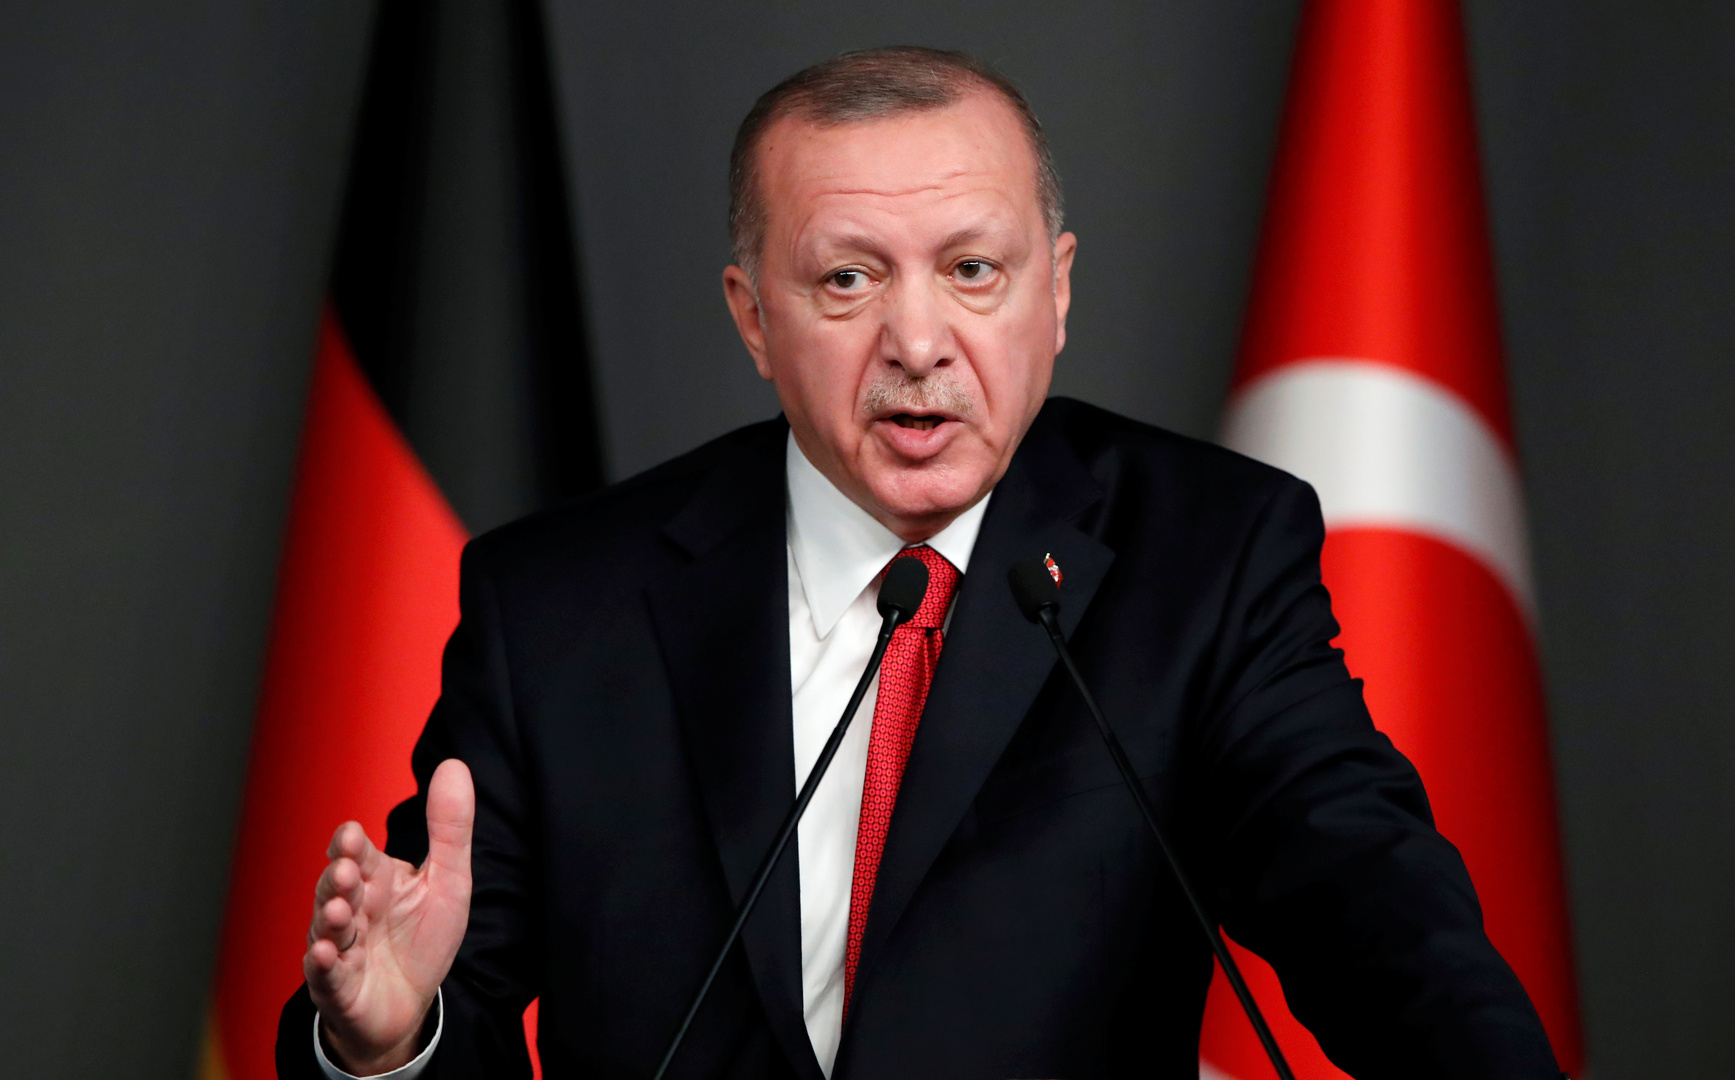 الرئيس أردوغان يرد بقوة على المعارضة بعد الانتقادات التي واجهتها حكومته خلال الفترة الأخيرة